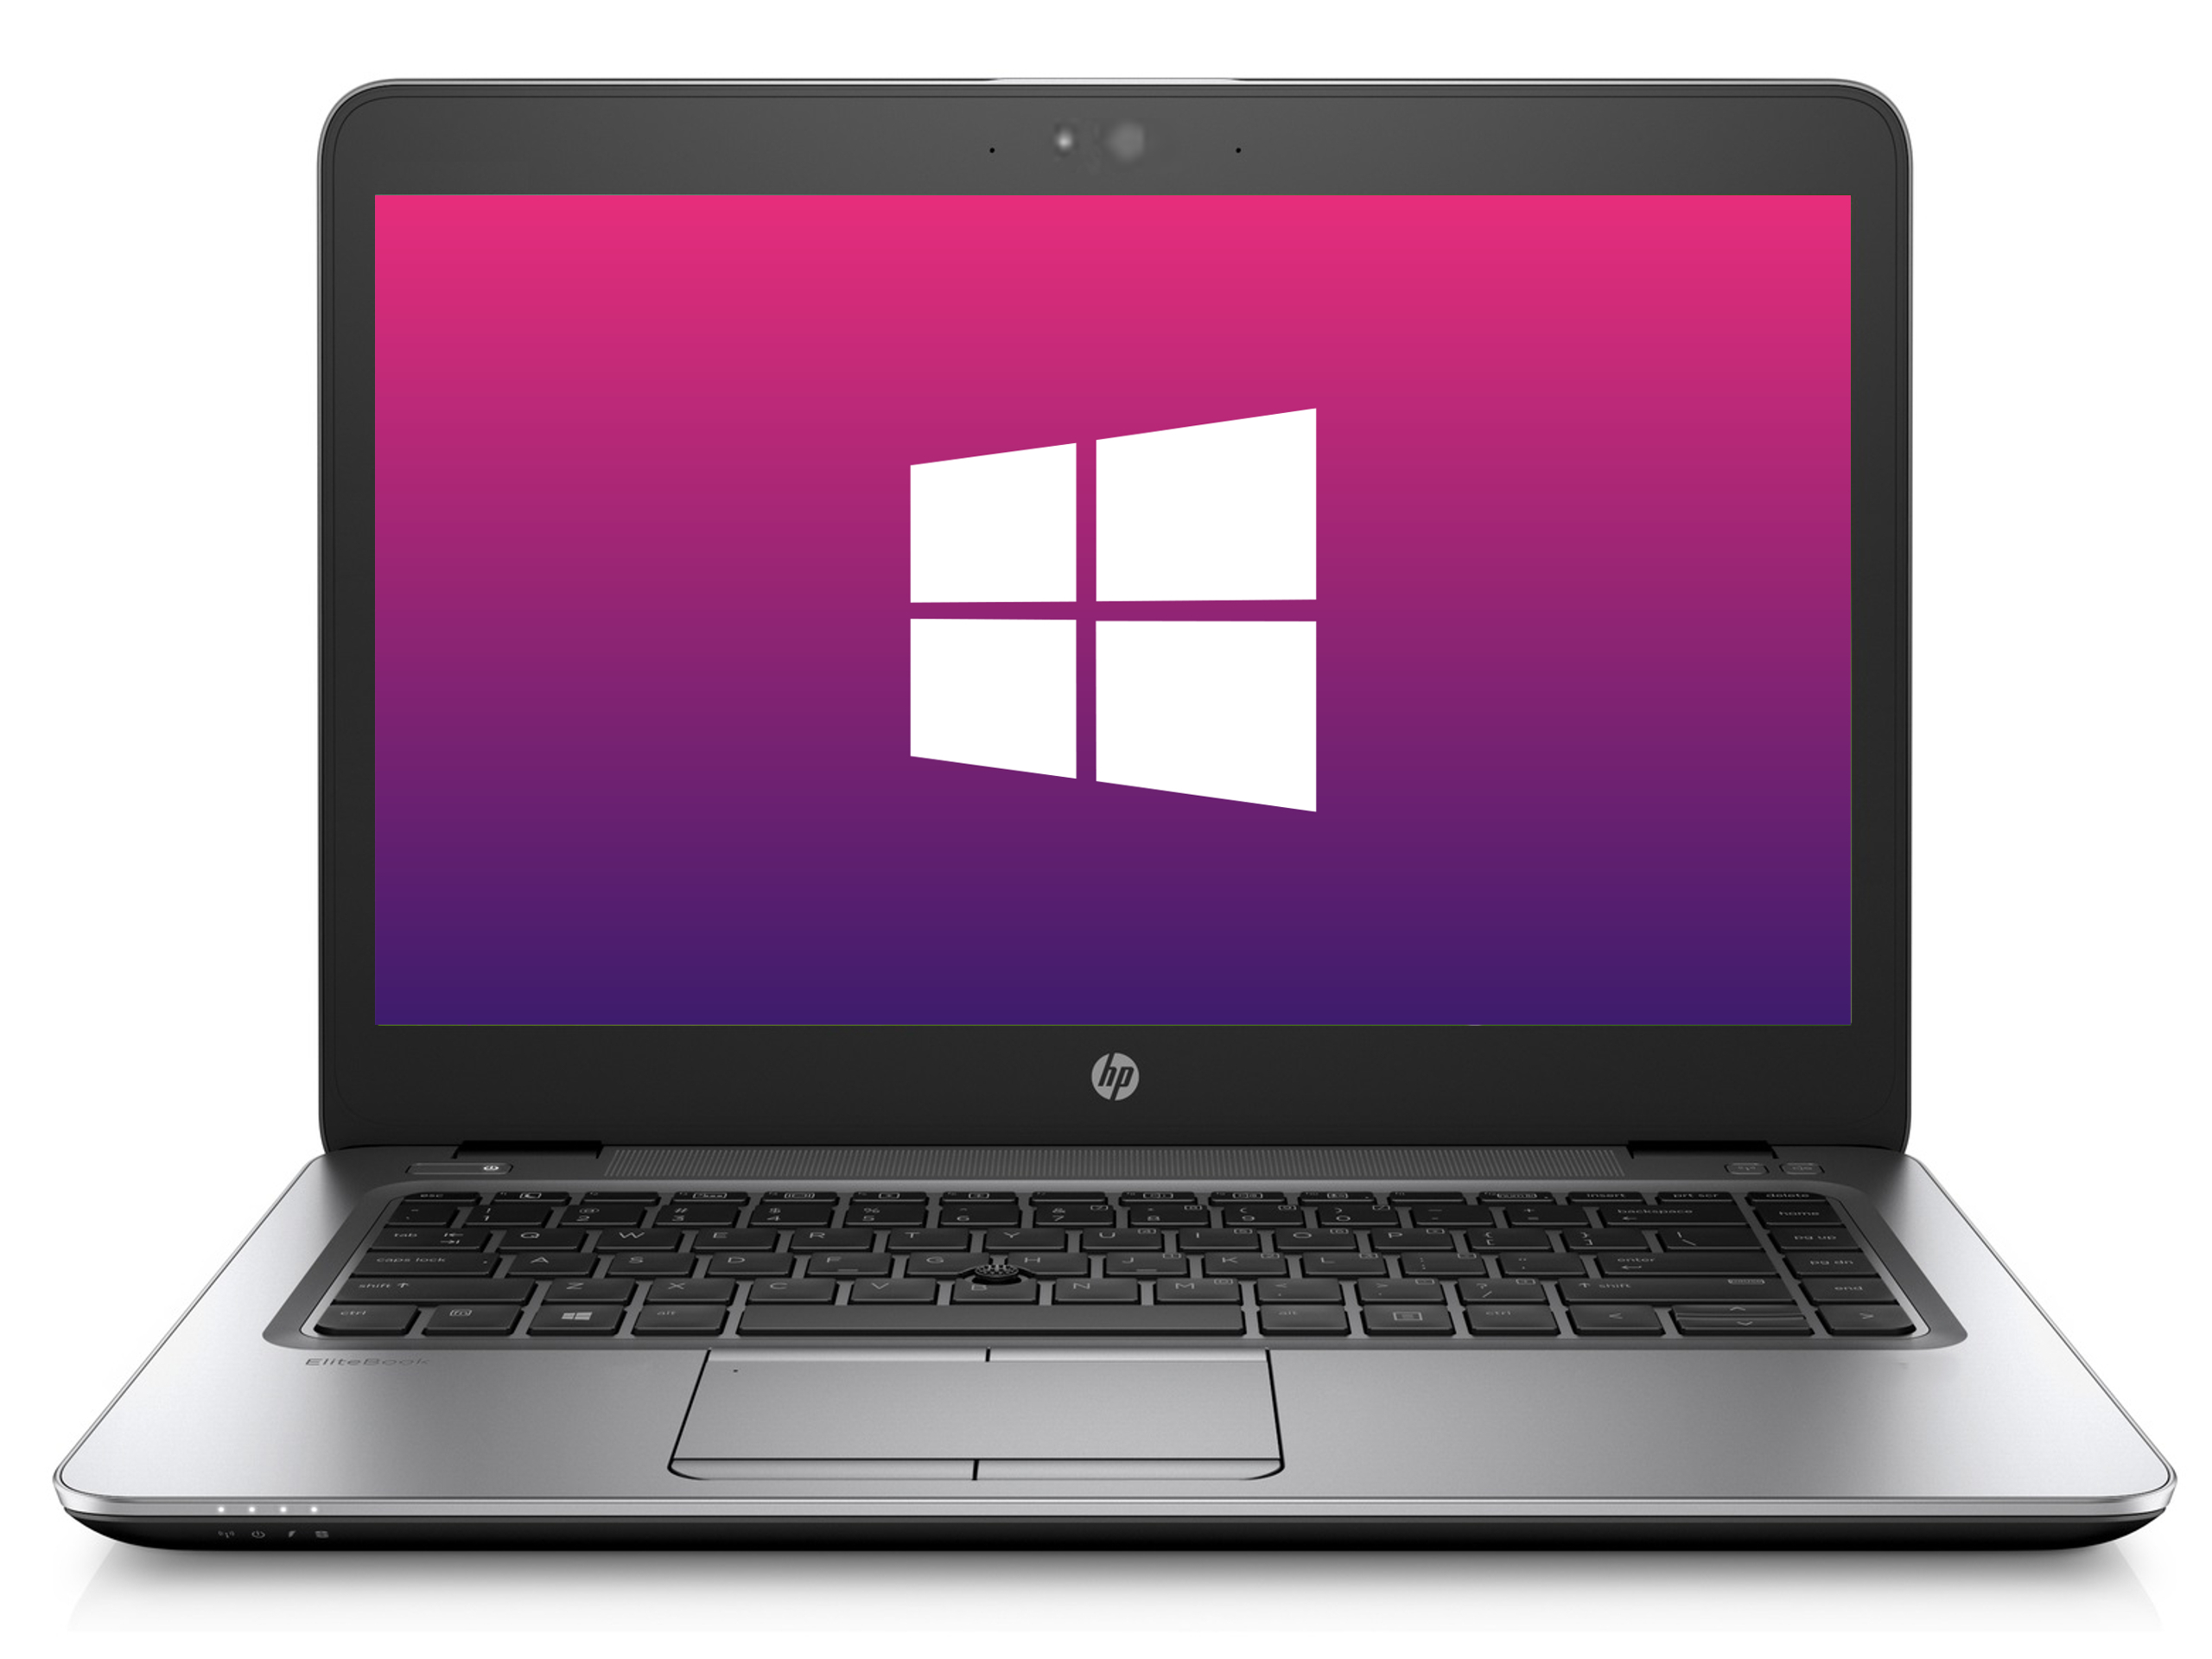 Ultrabook HP 840 G1 * 1366x768* 8GB * 240GB SSD